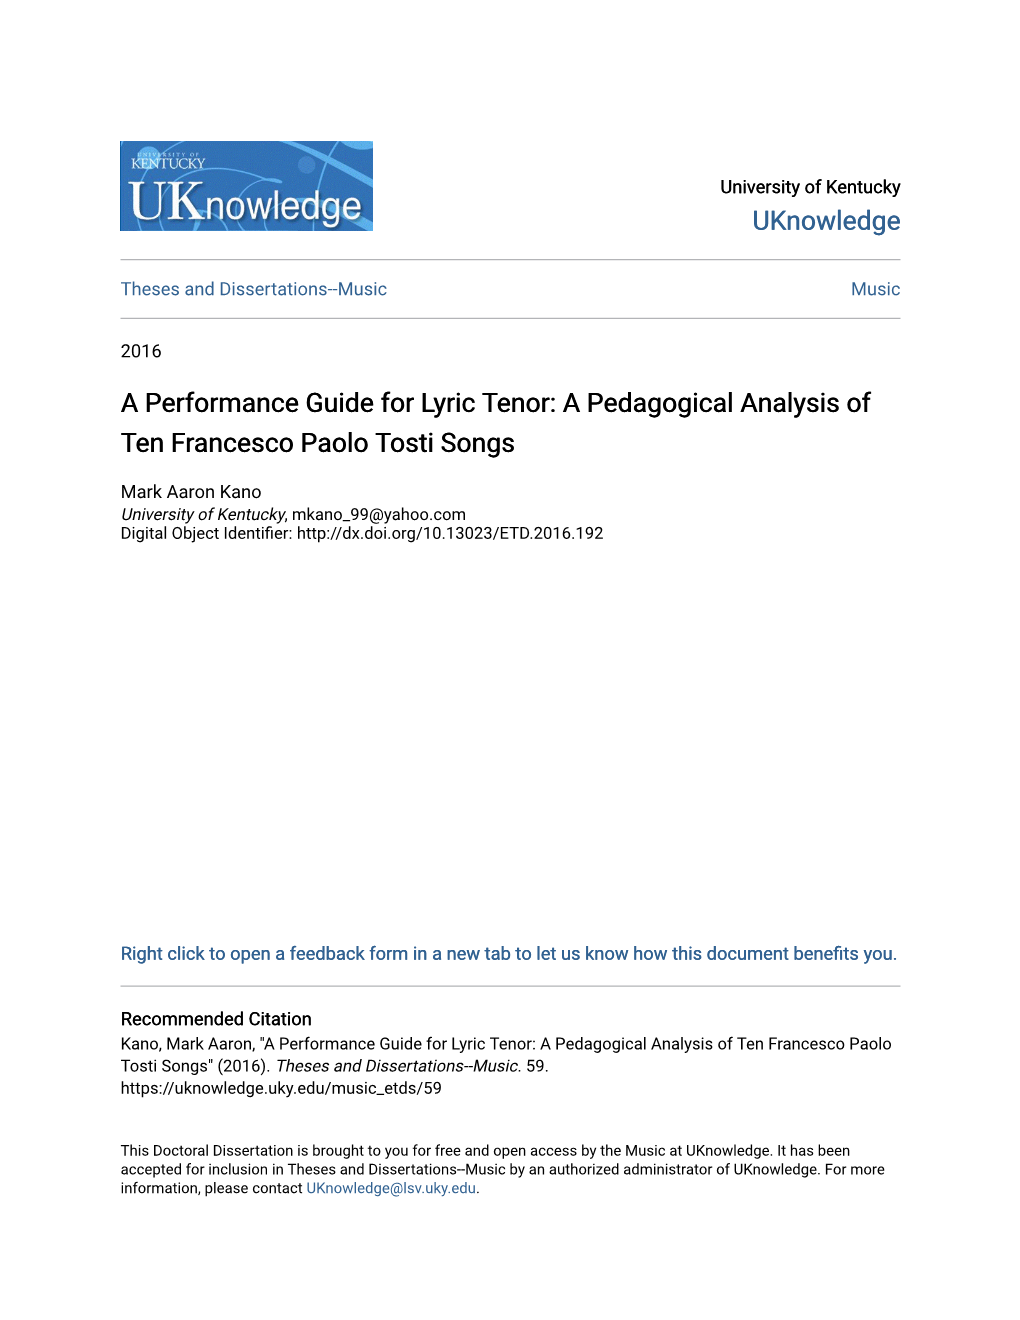 A Pedagogical Analysis of Ten Francesco Paolo Tosti Songs